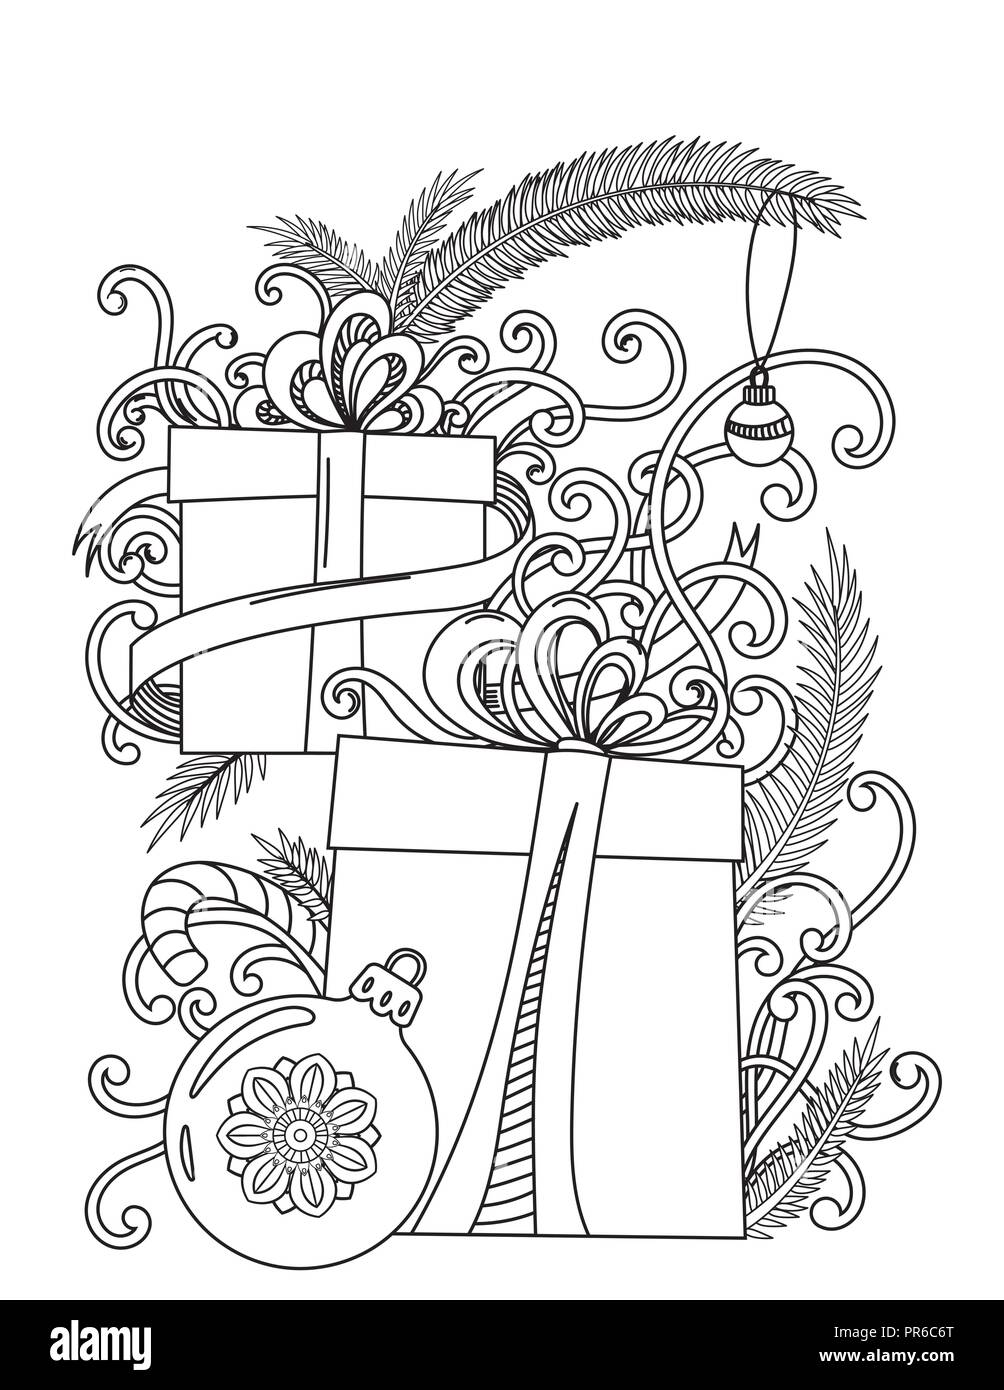 Página para colorear de Navidad. Libro para colorear de adultos. Regalos y decoración. Ilustración vectorial dibujada a mano. Ilustración del Vector